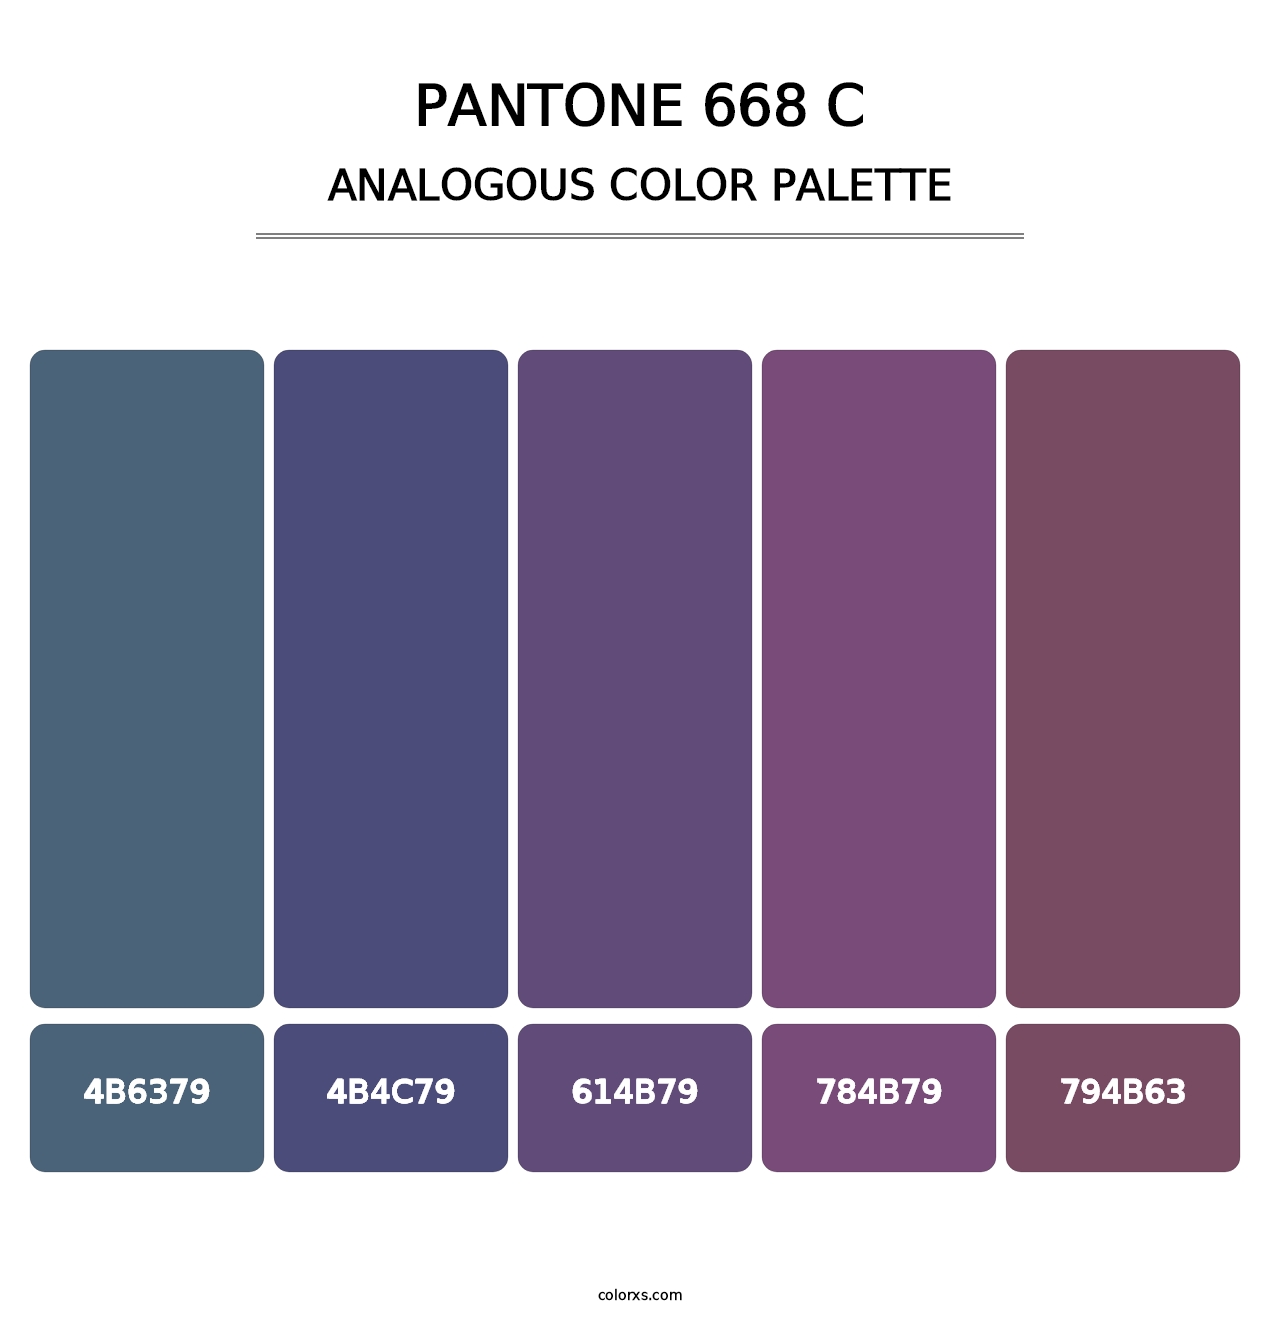 PANTONE 668 C - Analogous Color Palette